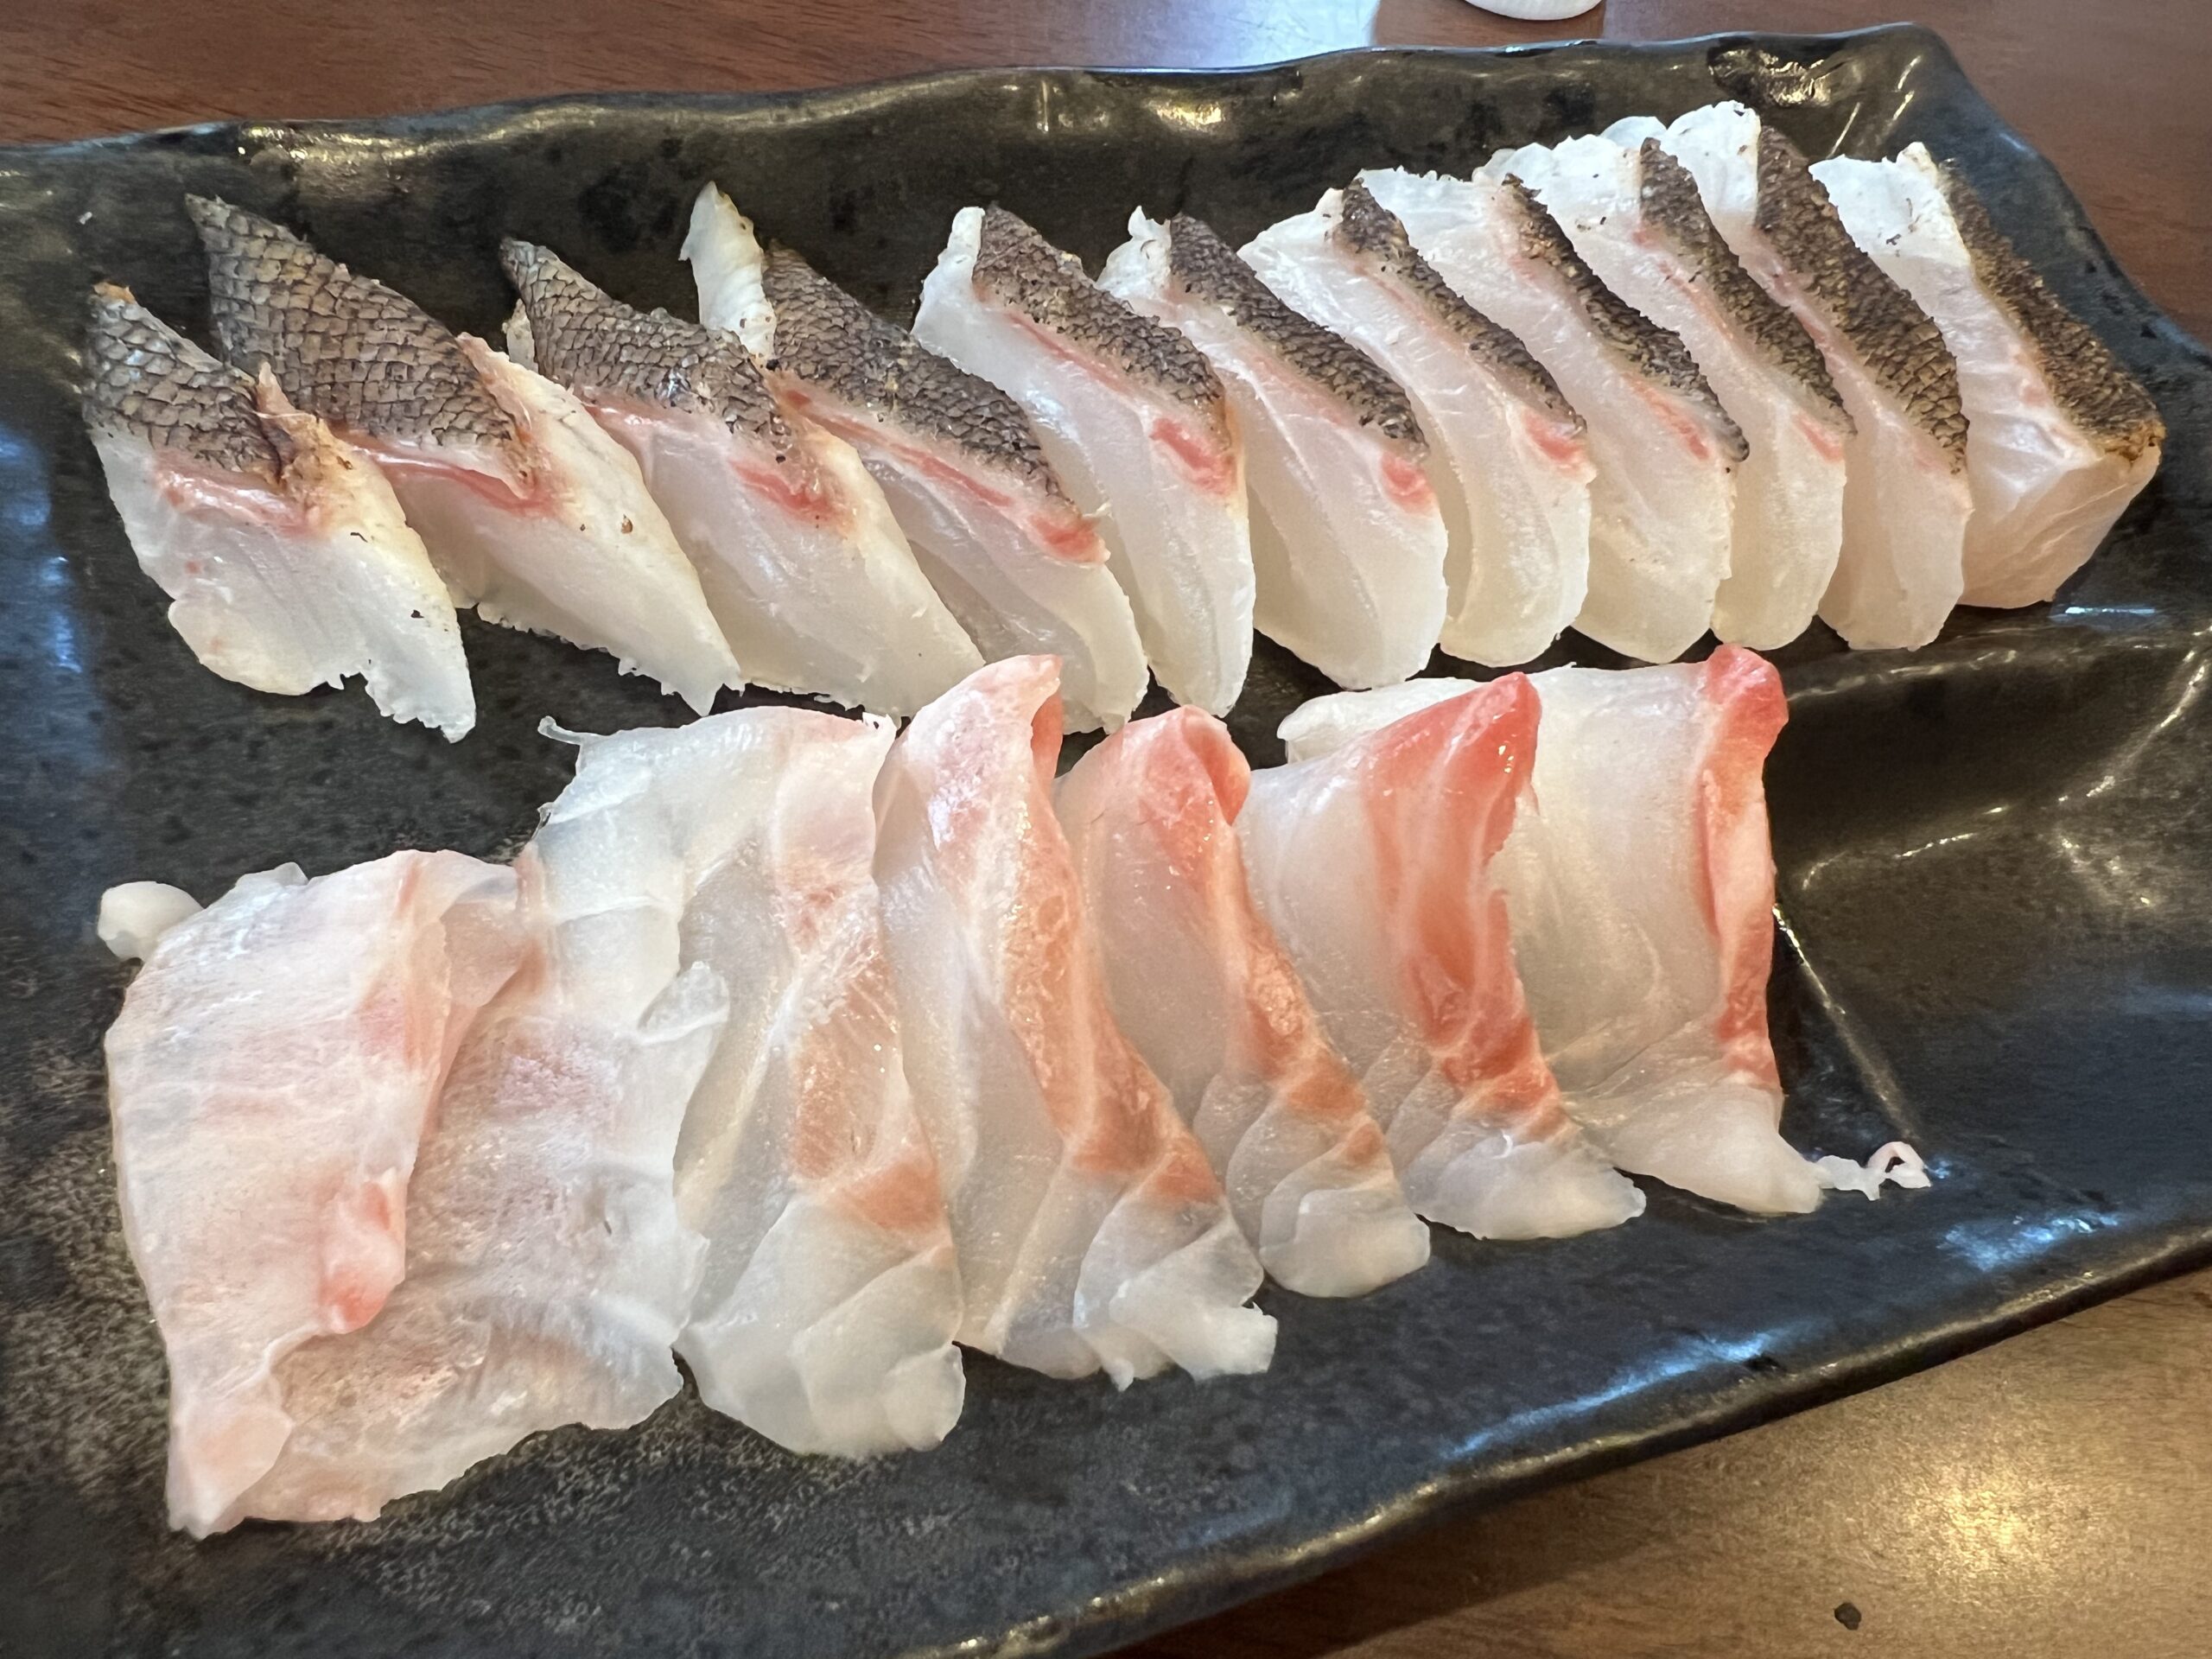 釣るのは石鯛、食べるのはイシガキダイ。これは底物魚釣りでは常識。刺身と炙りは最高の美味。釣太郎